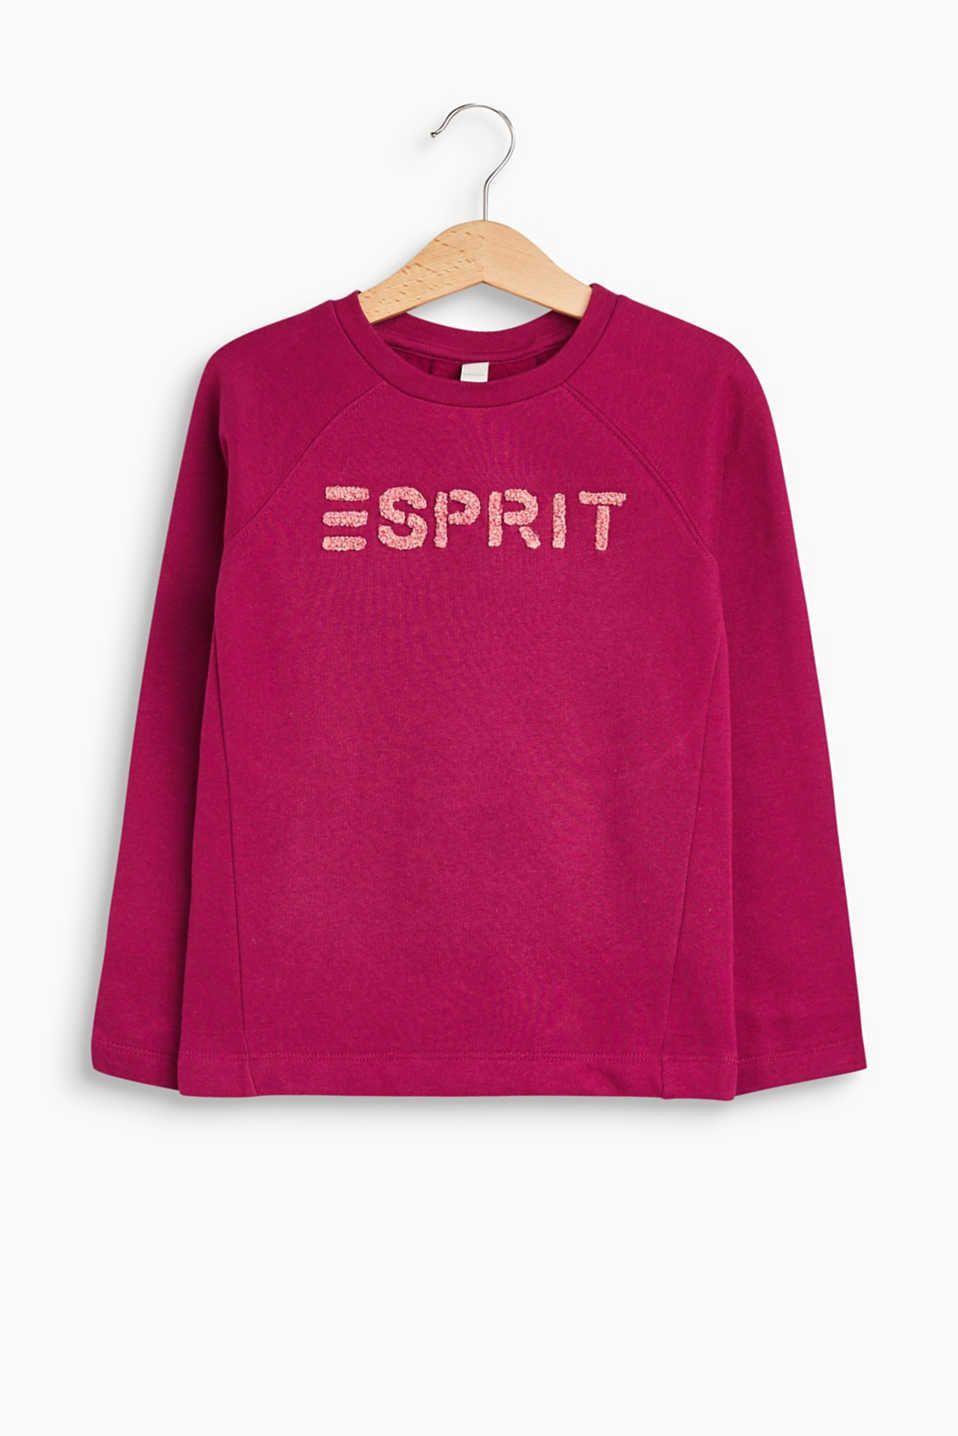 Esprit Logo - Esprit sweatshirt in 100% cotton at our Online Shop